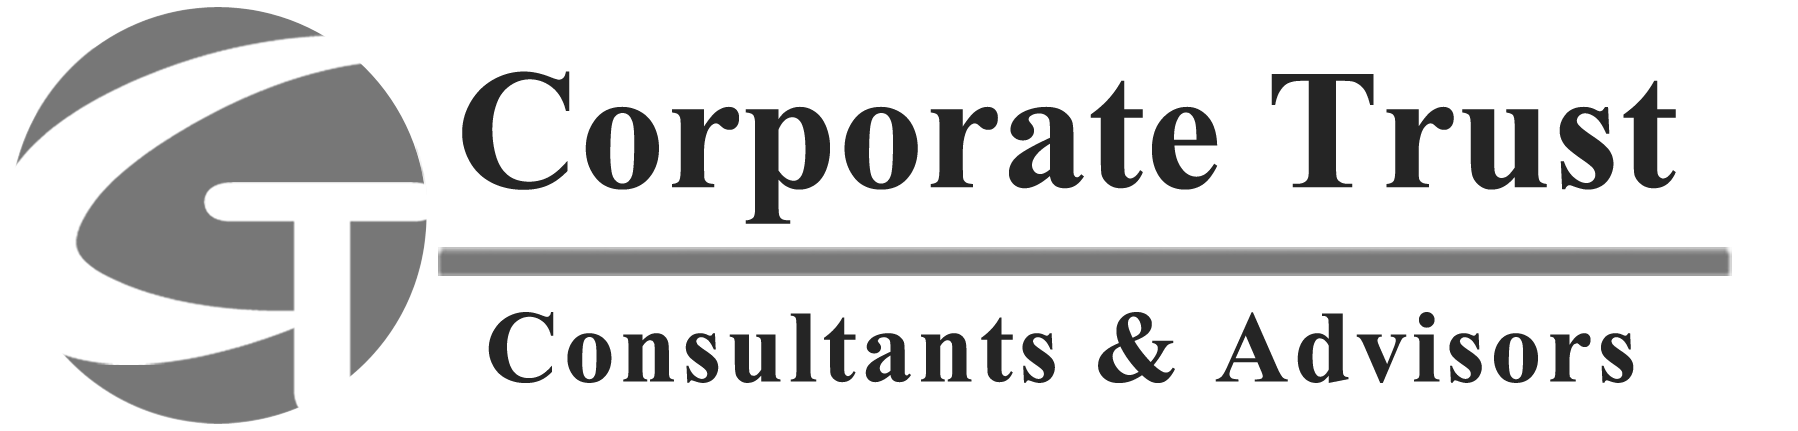 Corporate-Trust » Consultants & Advisors